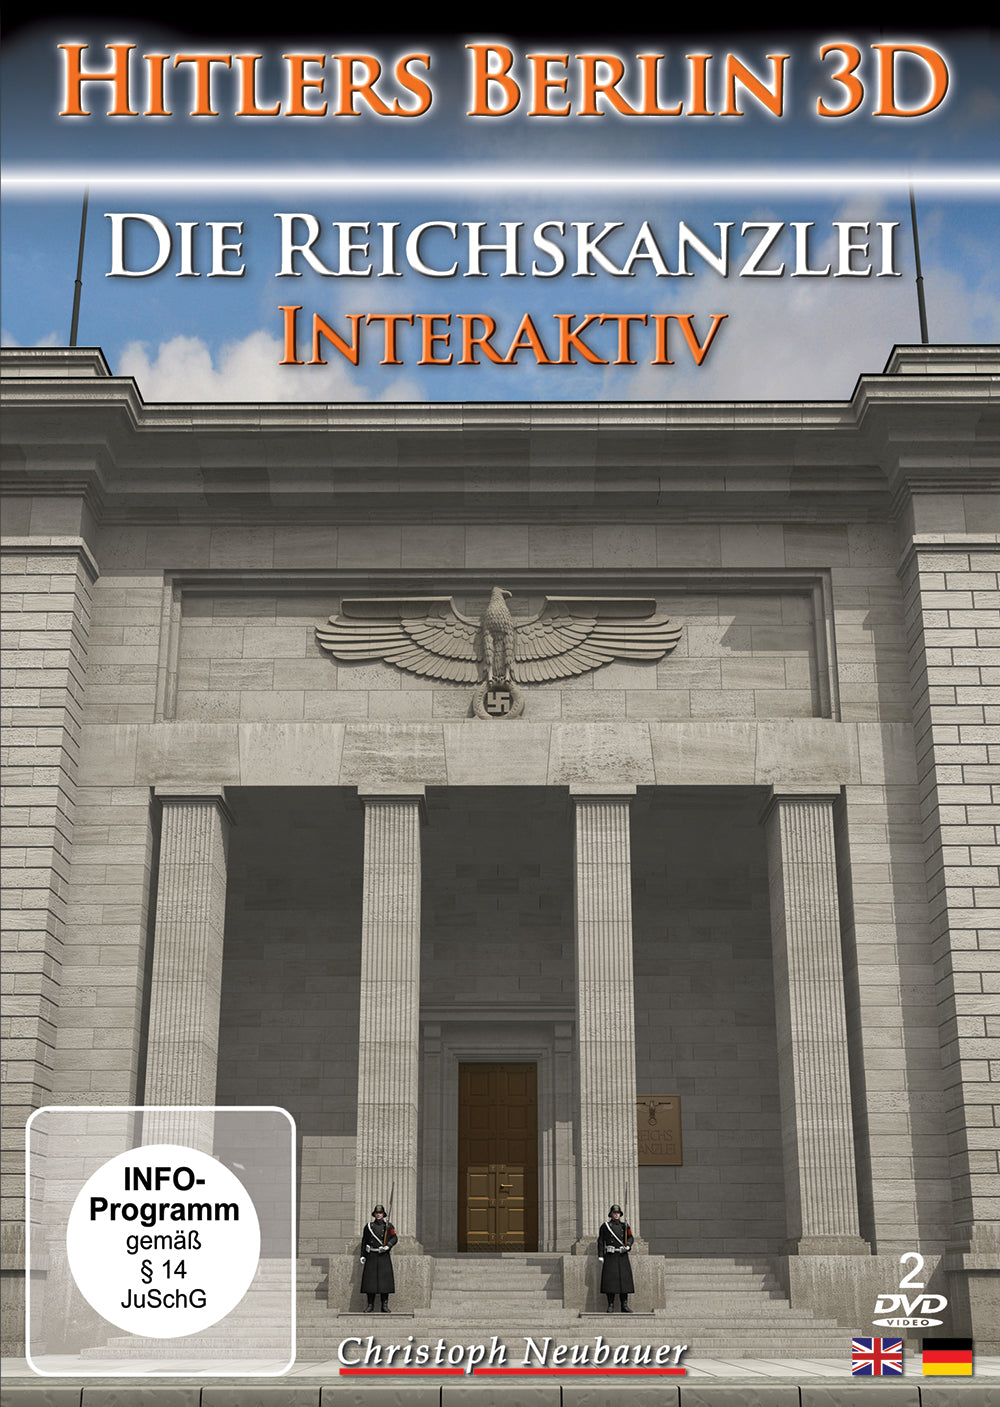 HD-Video-Download "Die Reichskanzlei" (German)